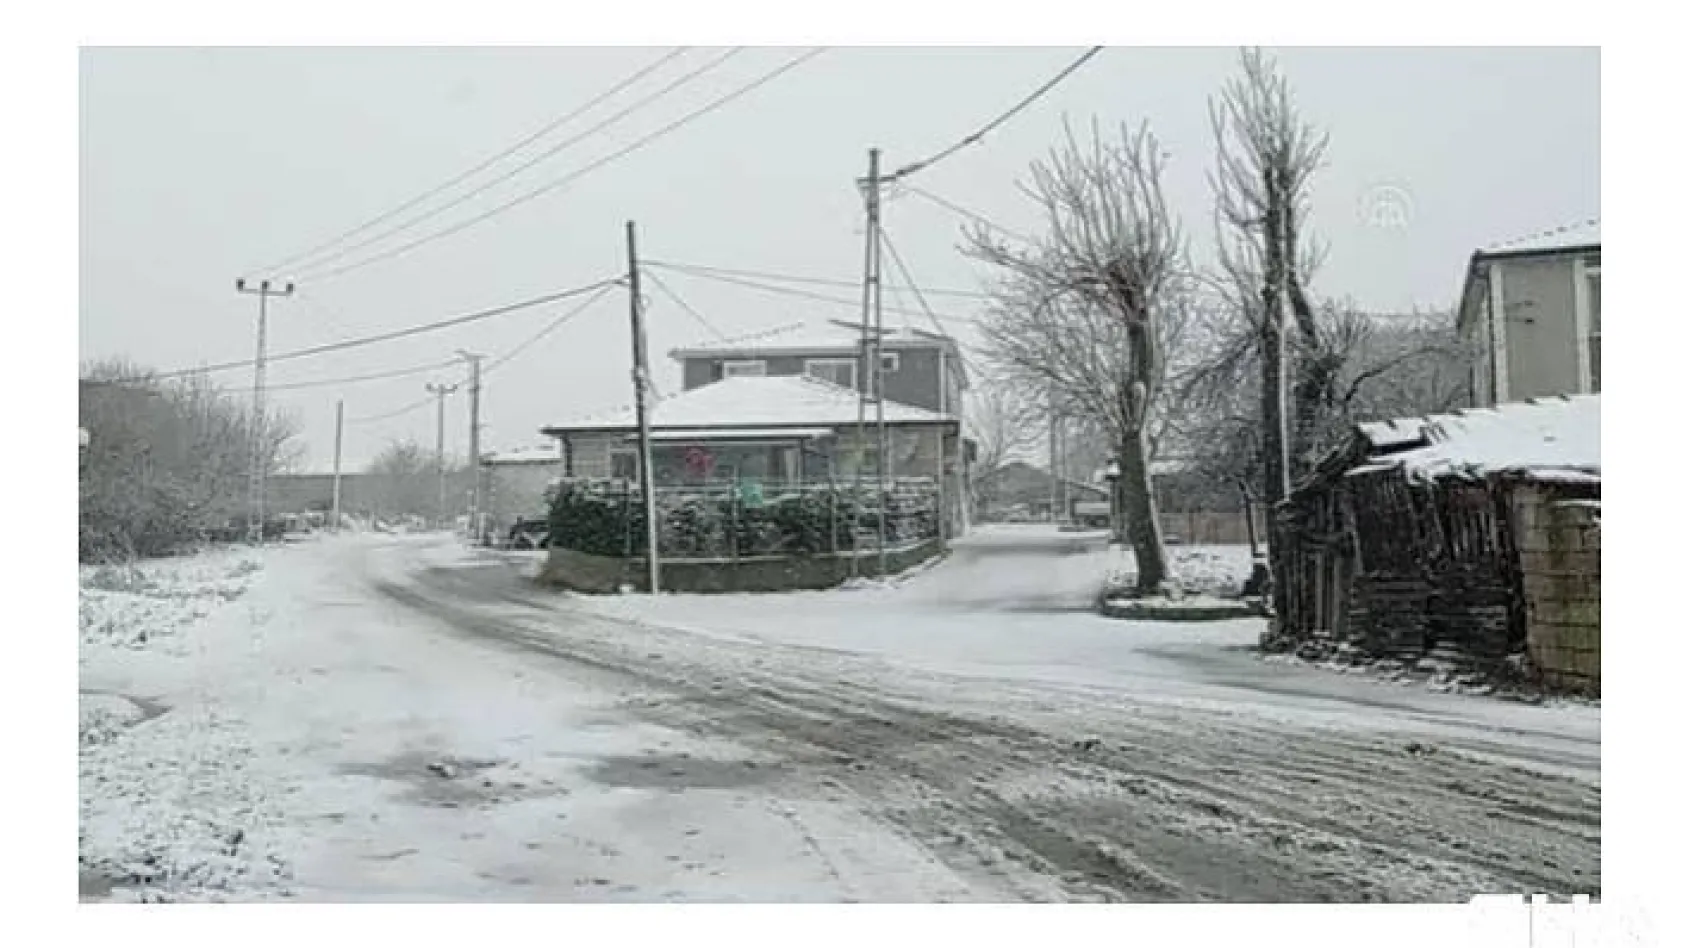 Meteoroloji açıkladı: Kar yağışı İstanbul'da 5 gün sürecek